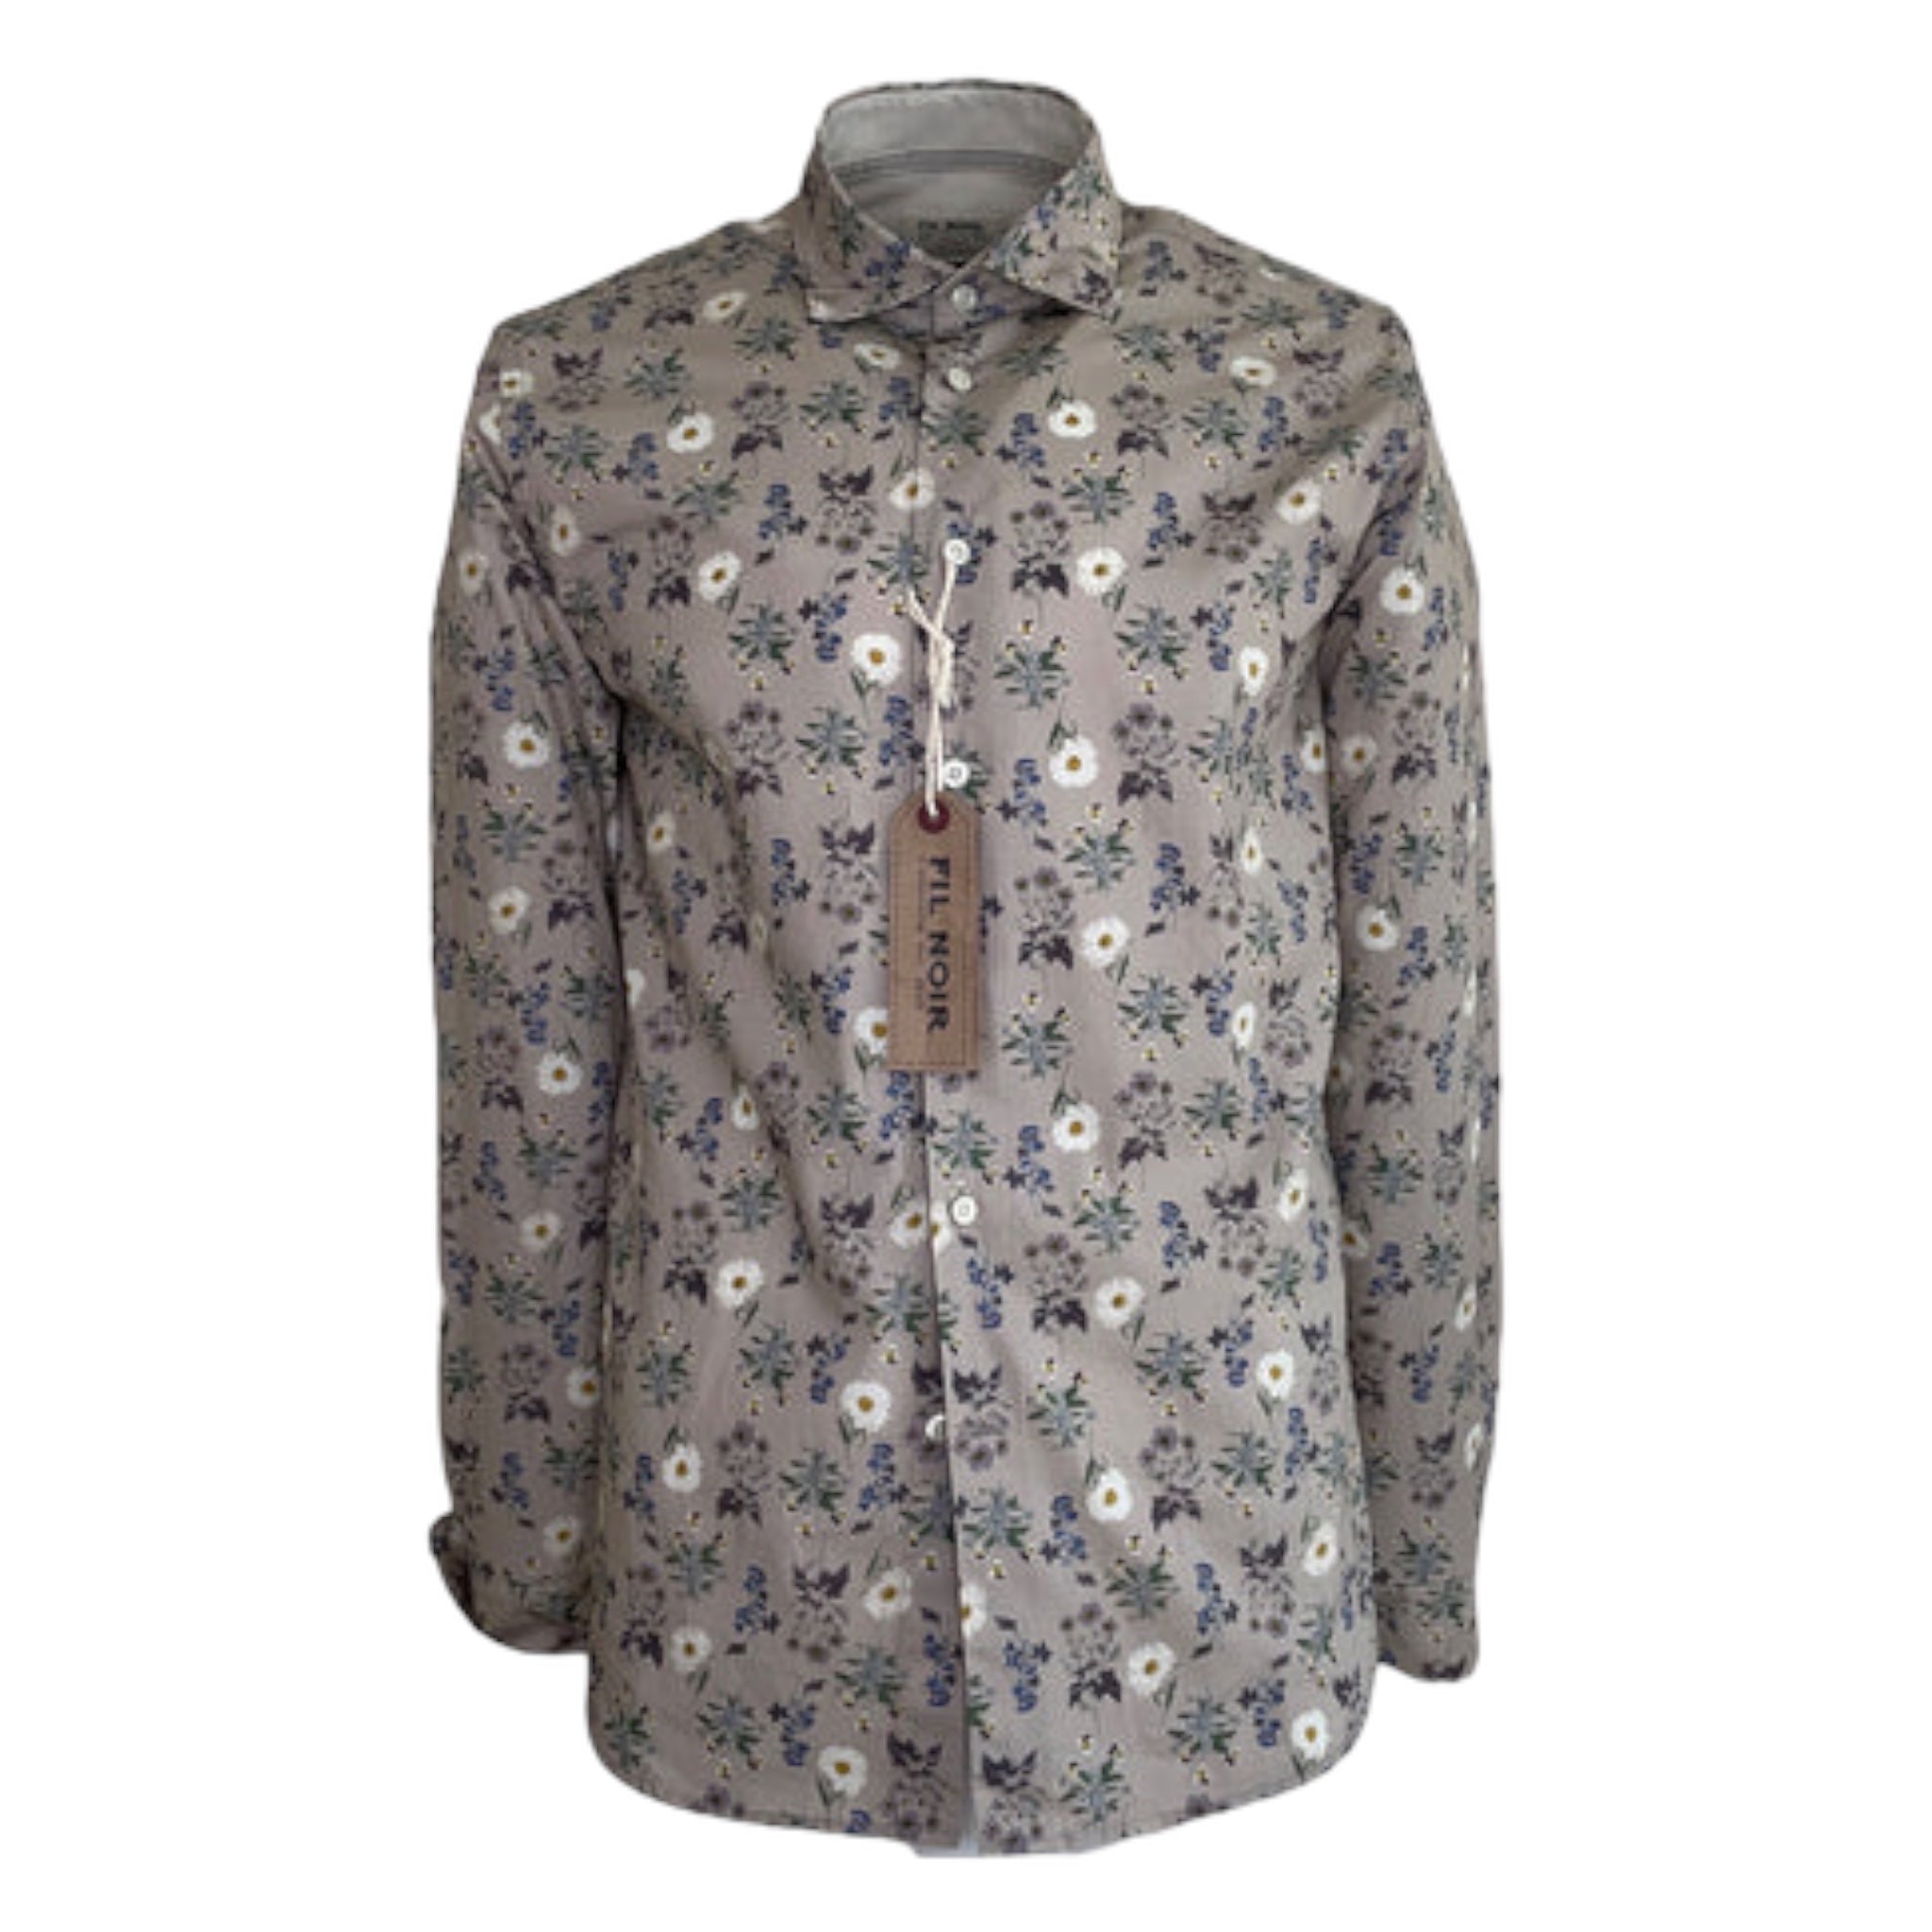 Fil Noir Beige Daisy & Floral Print Long Sleeve Shirt (51 887 20)